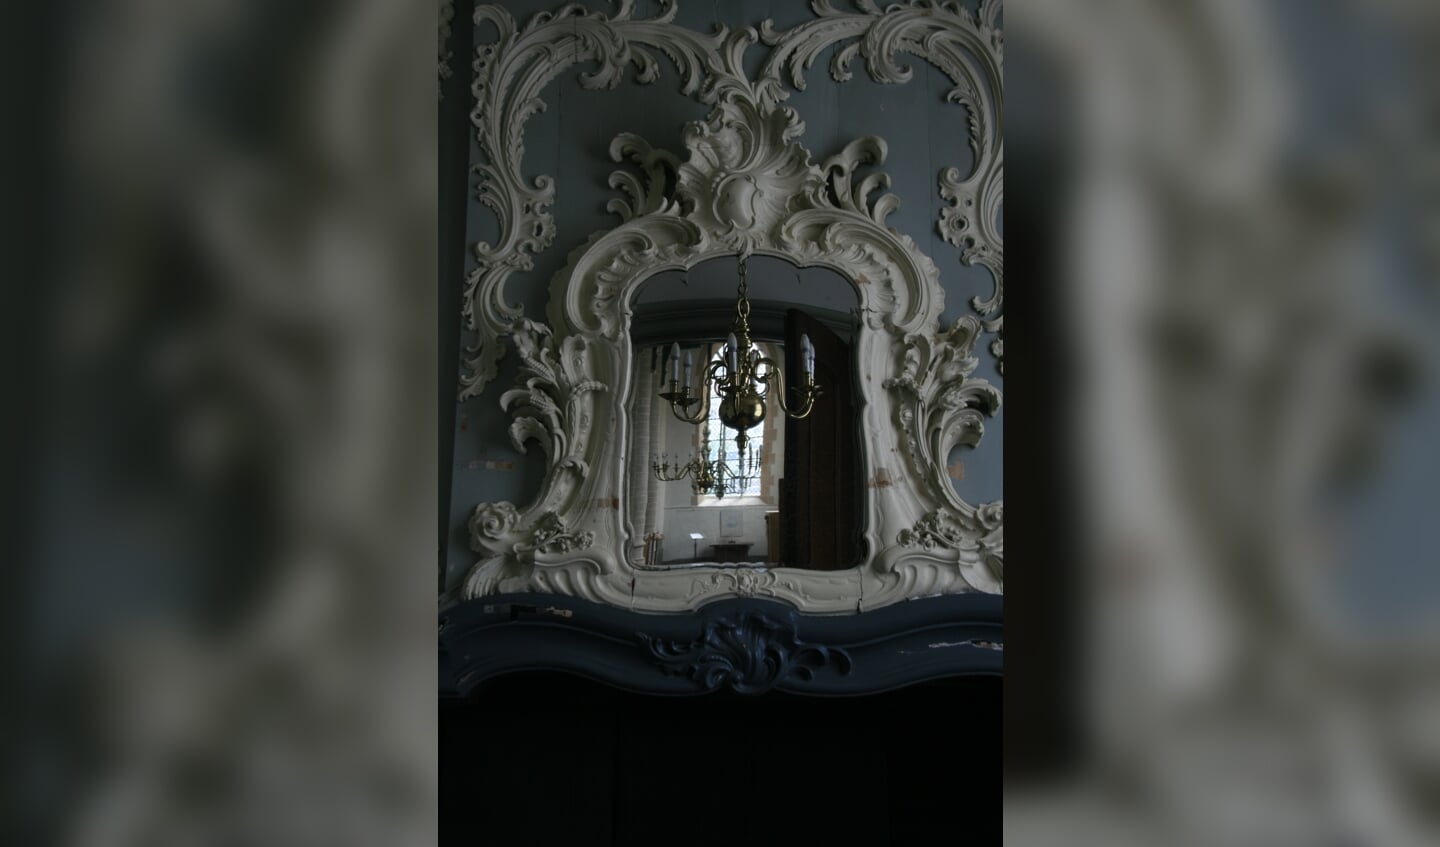 De spiegel boven de schouw in de consistoriekamer is heel bijzonder.